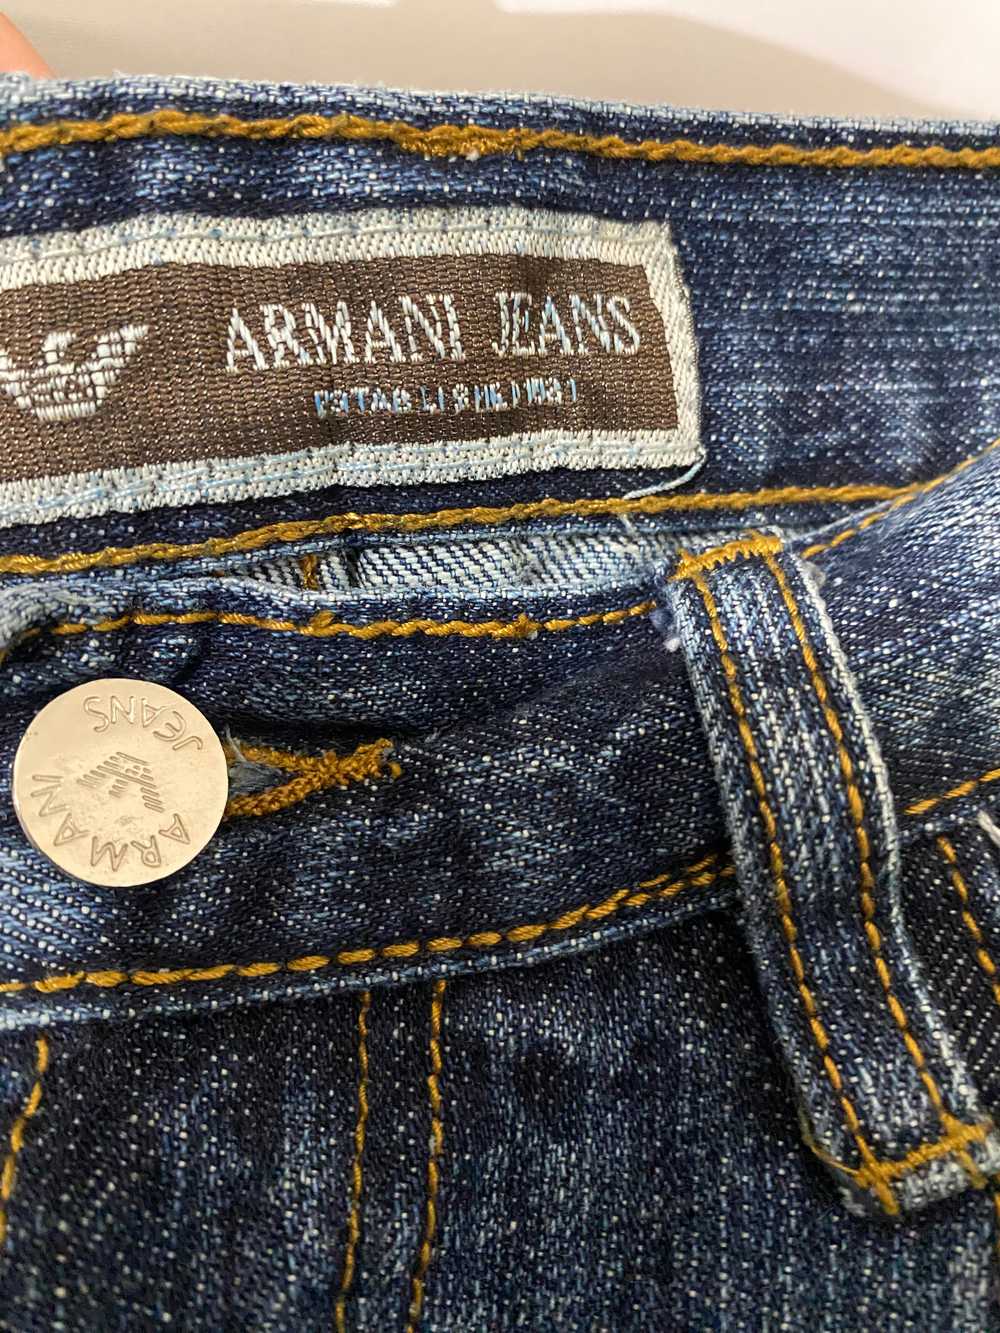 Vintage Armani Jeans - image 2